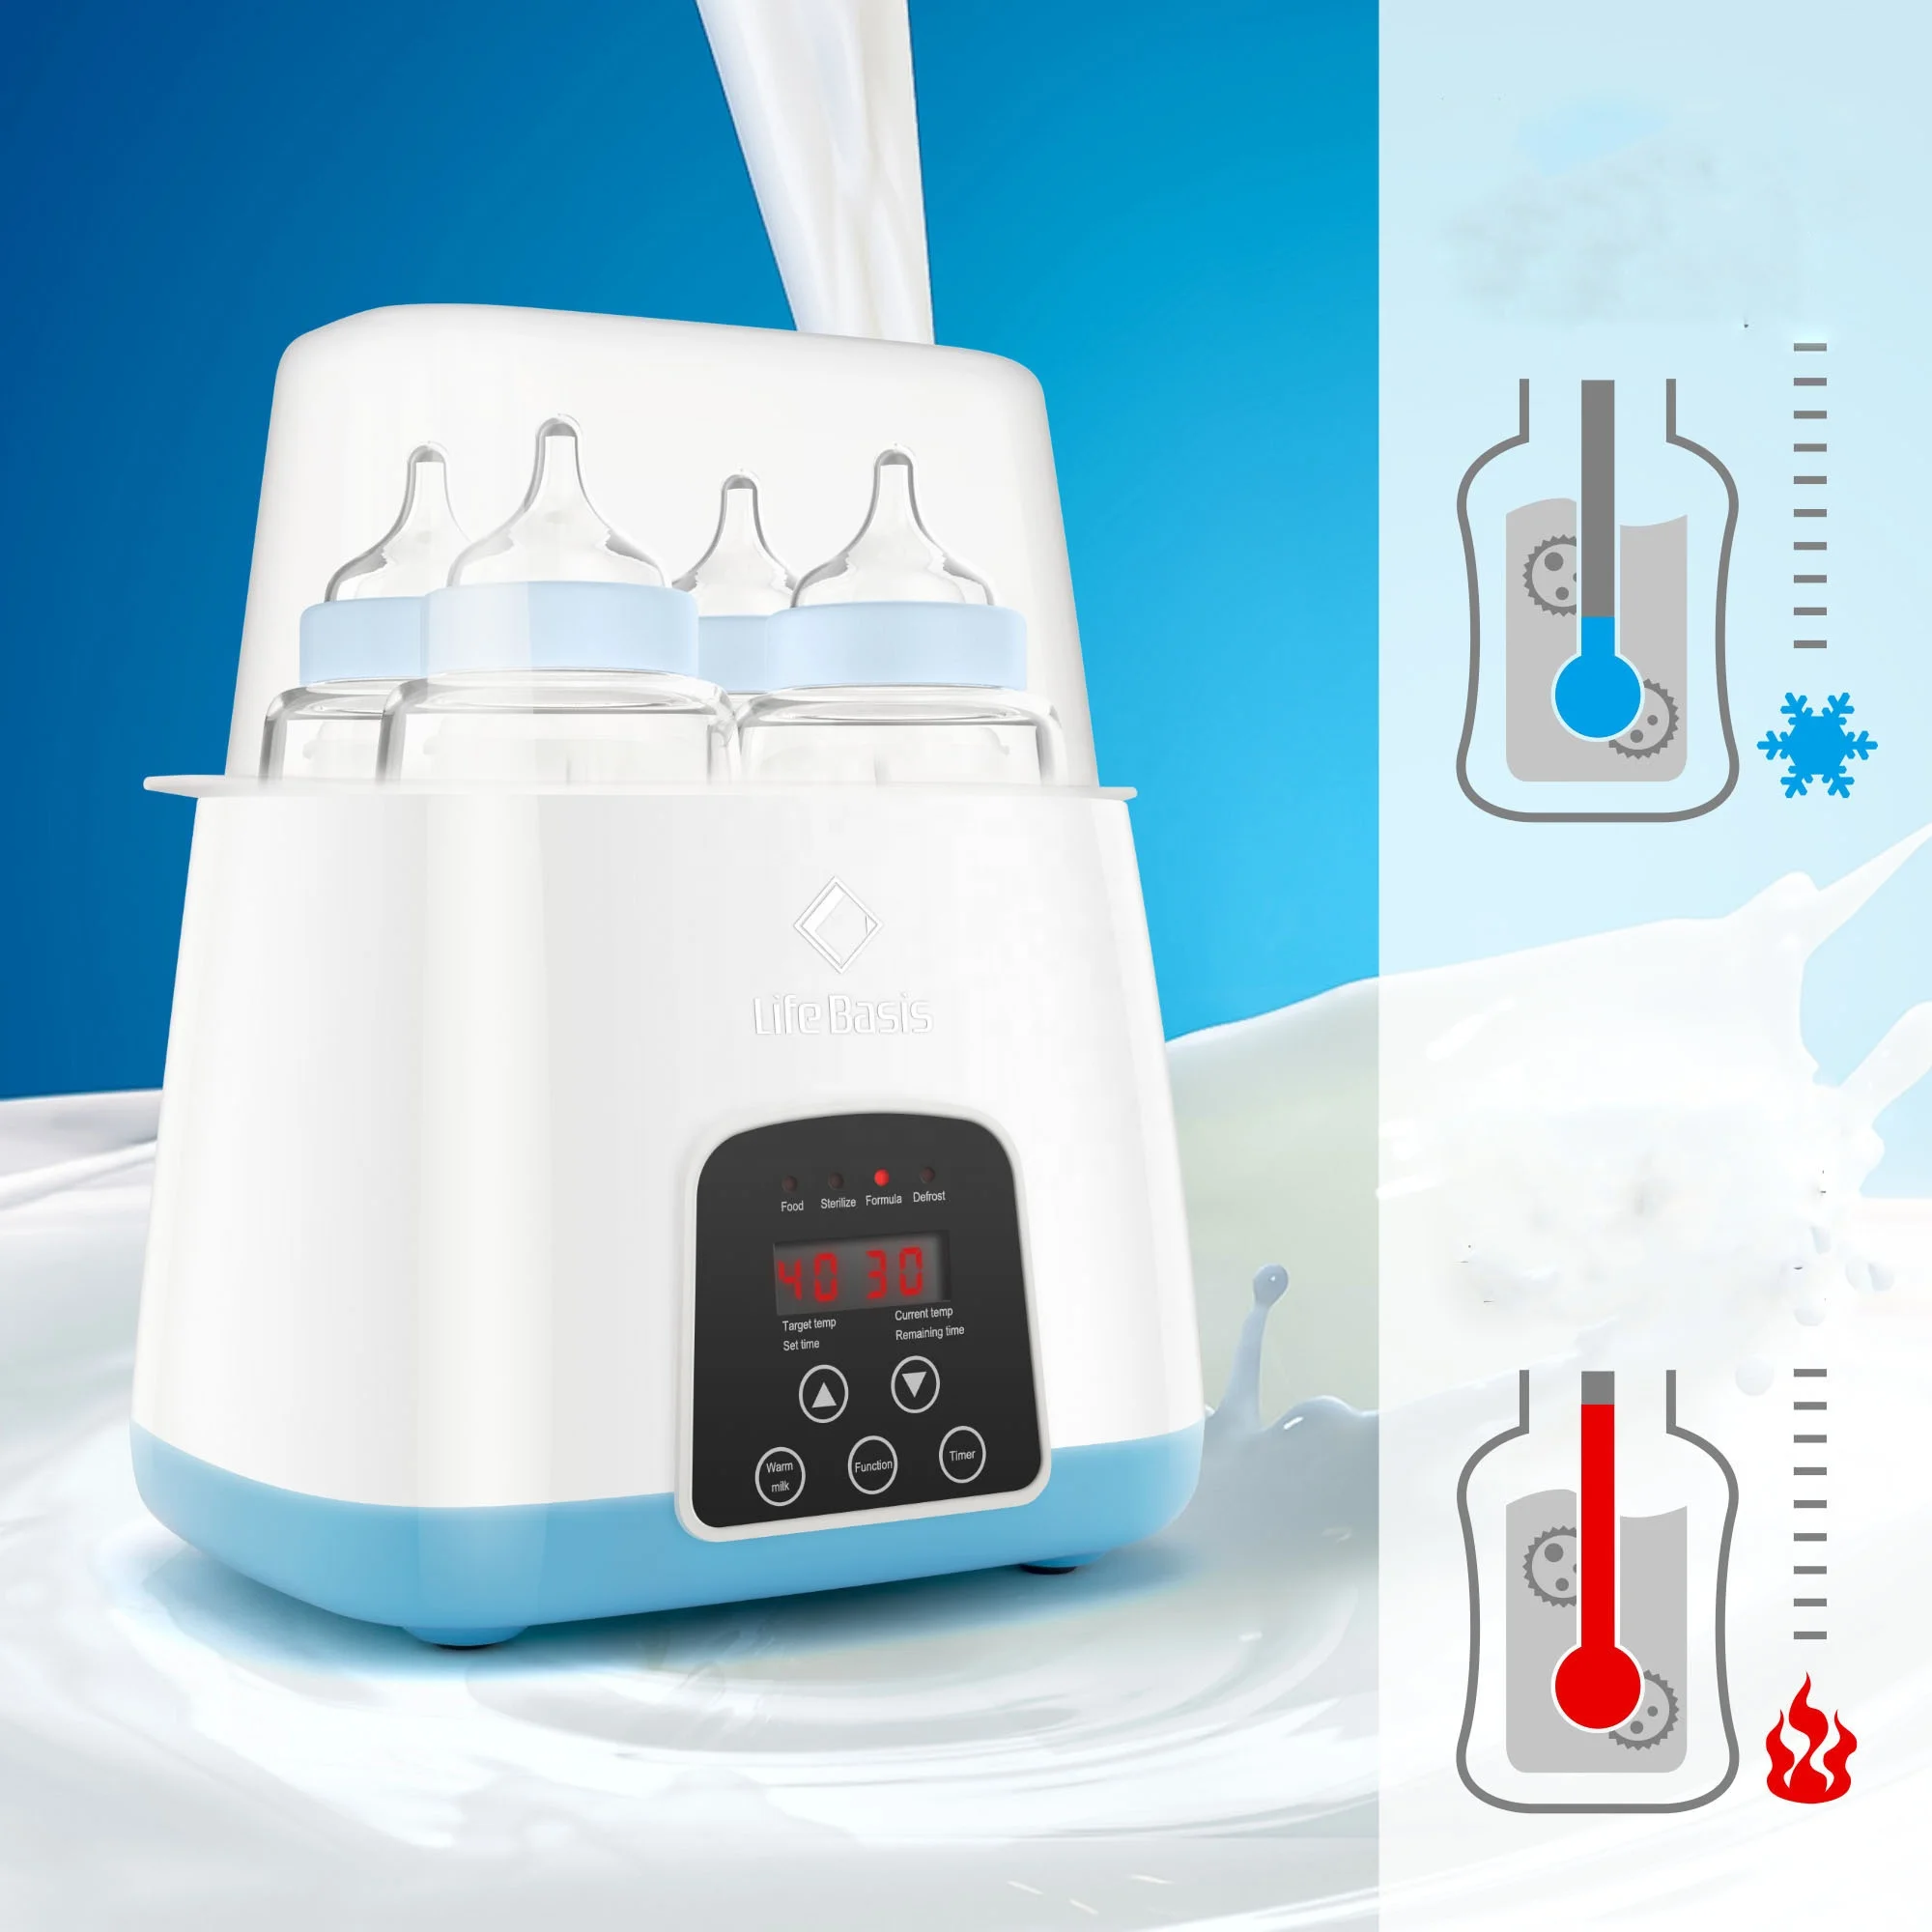 Intelligent LCD touchscreen fast heat feeding milk electric baby bottle warmer